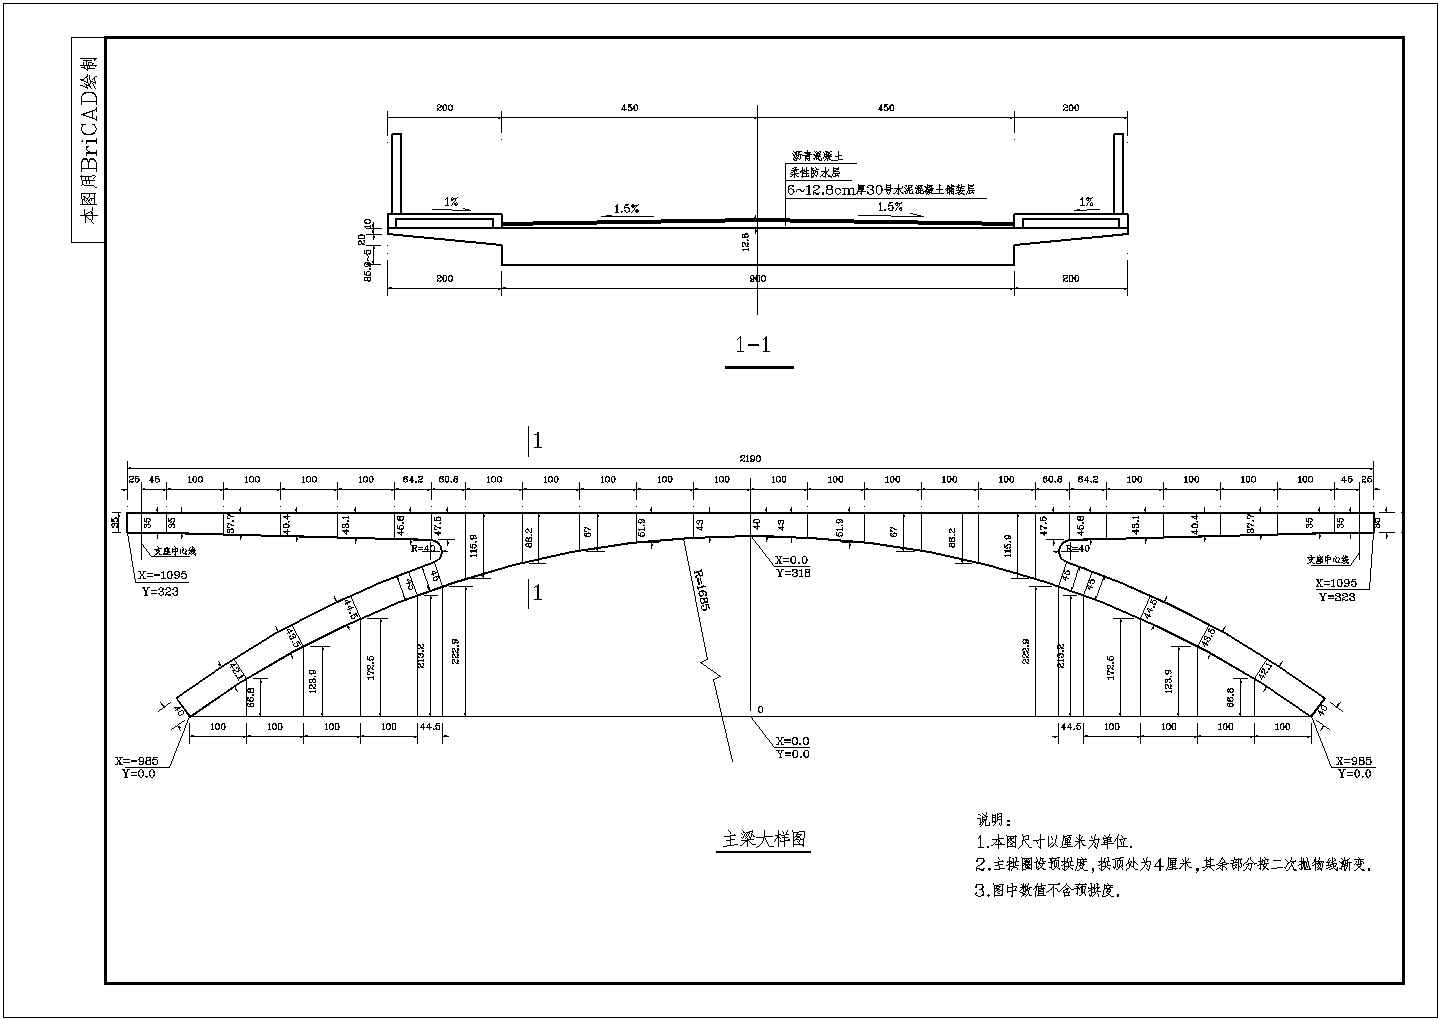 某跨度为44m斜腿刚架拱桥设计图纸